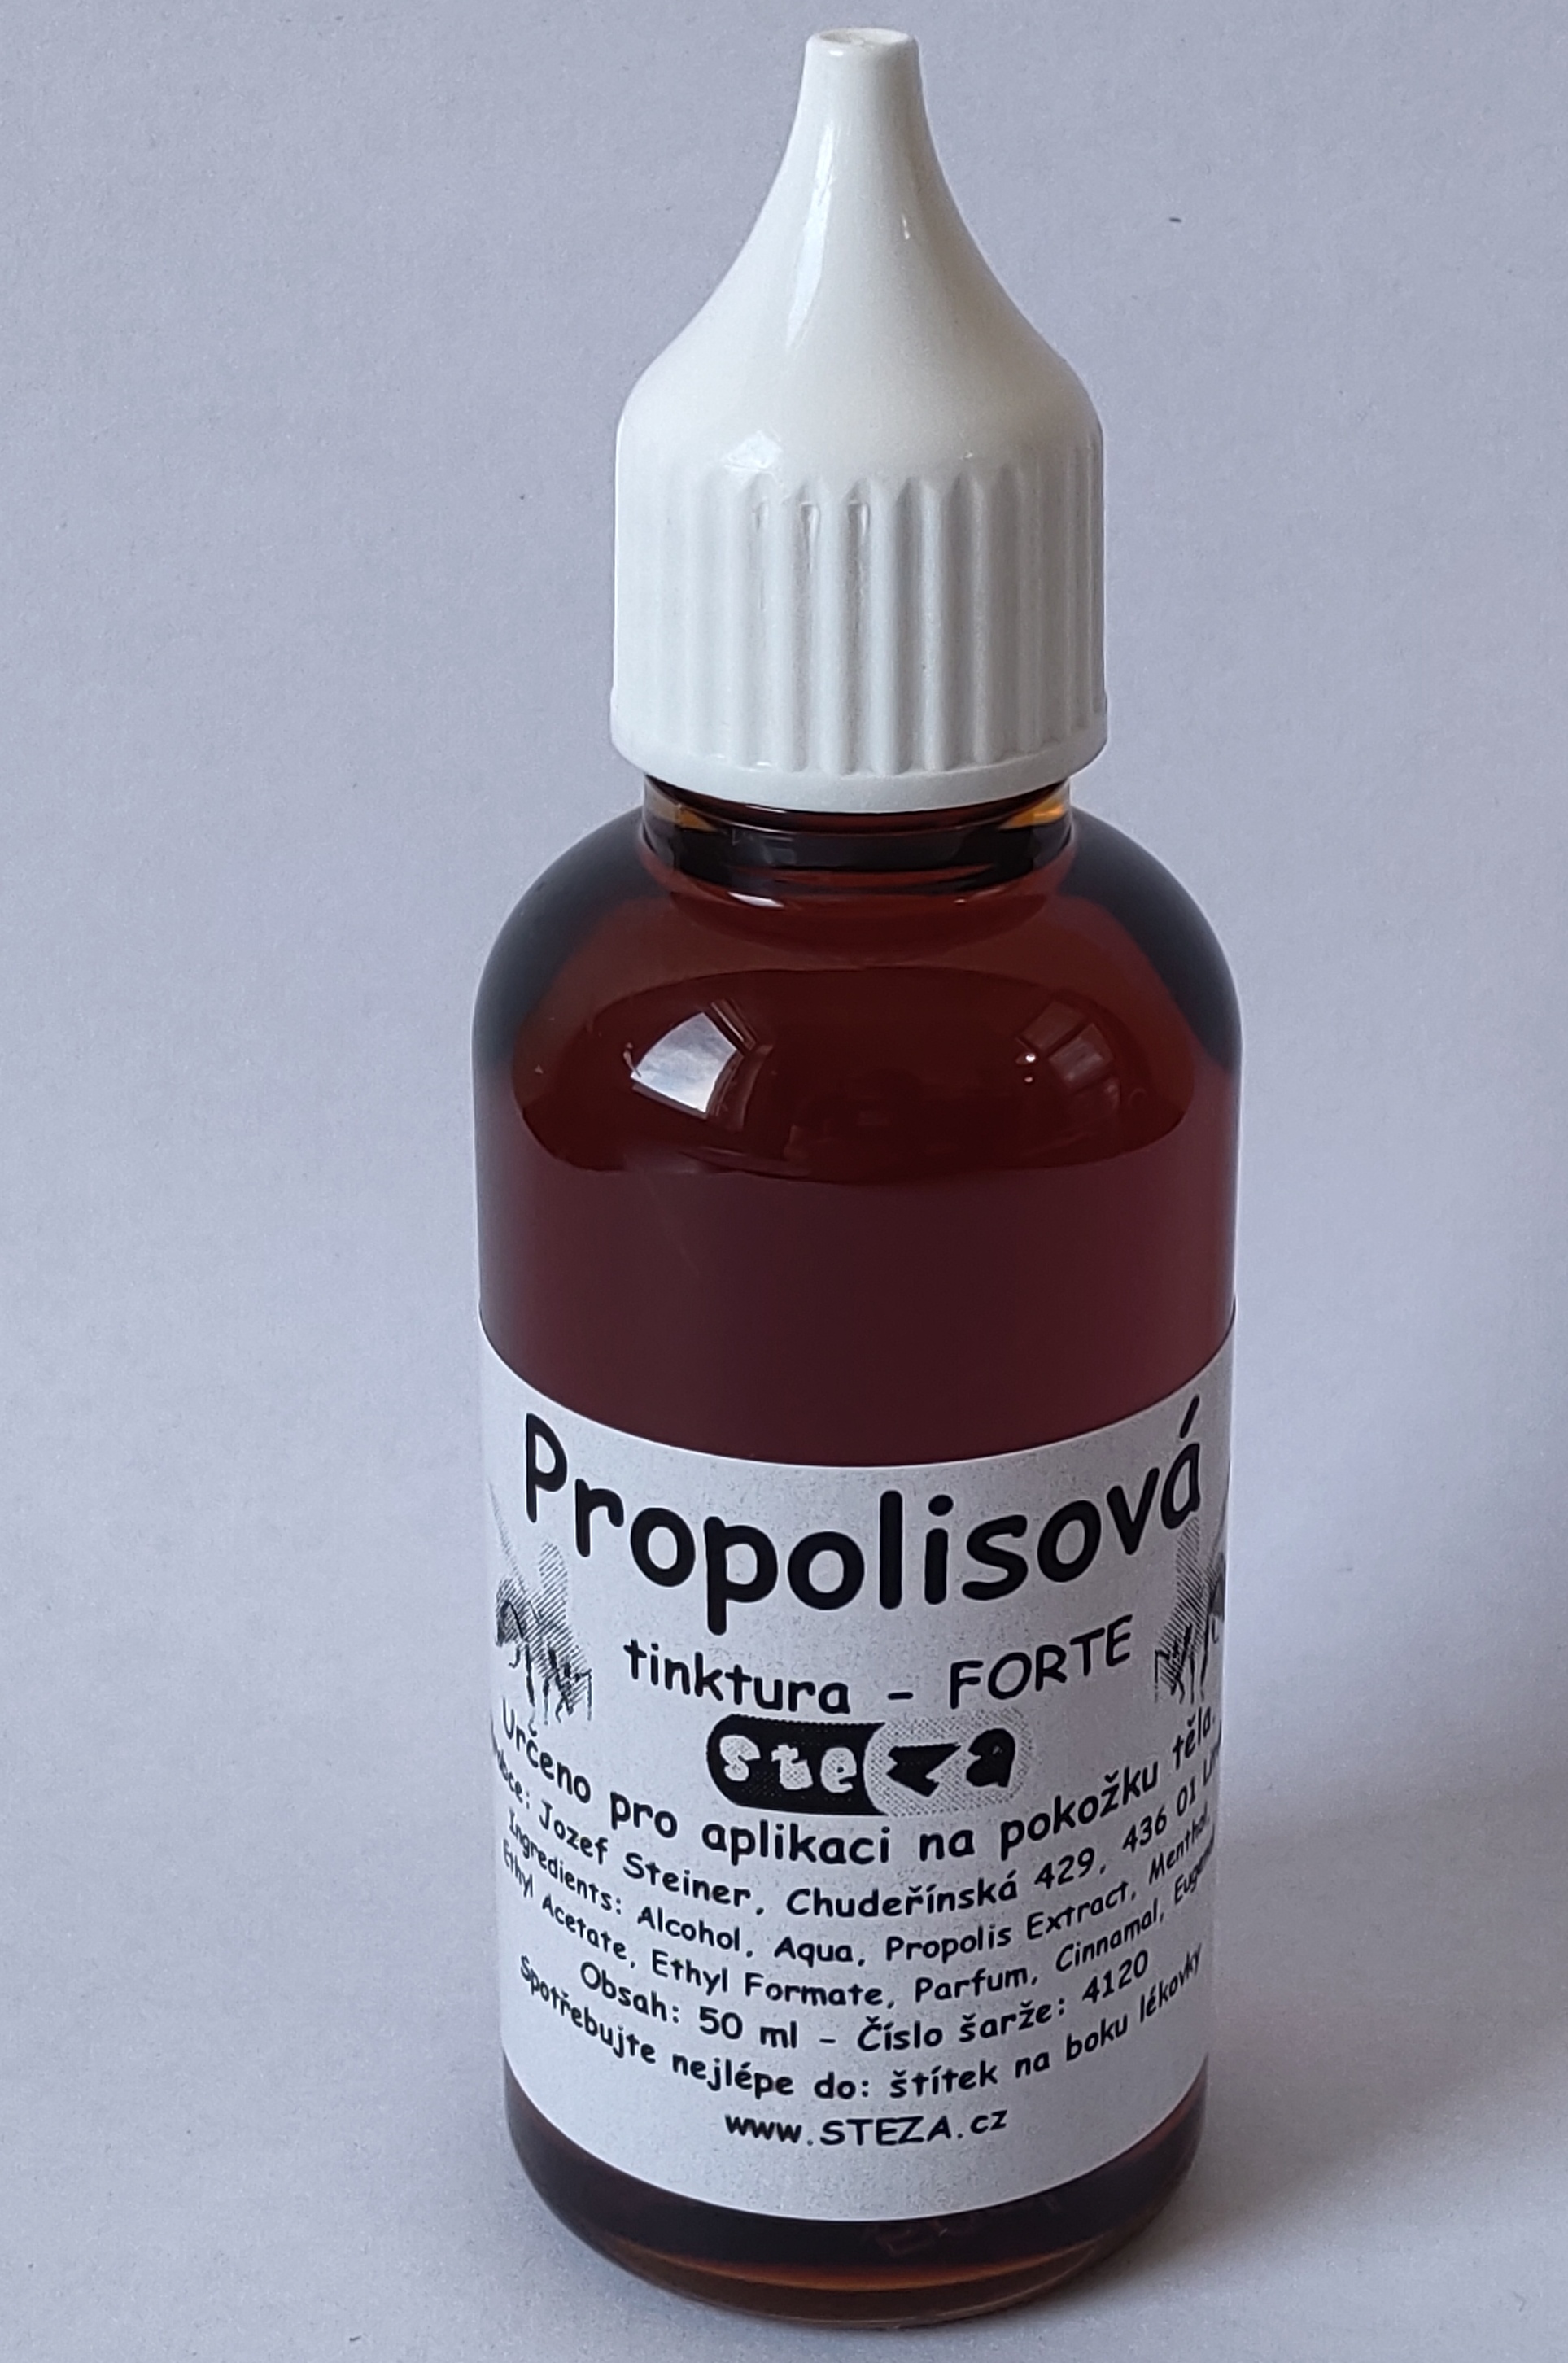 STEZA - Propolisová tinktura - FORTE 50 ml. (Propolisová tinktura VČELKA)